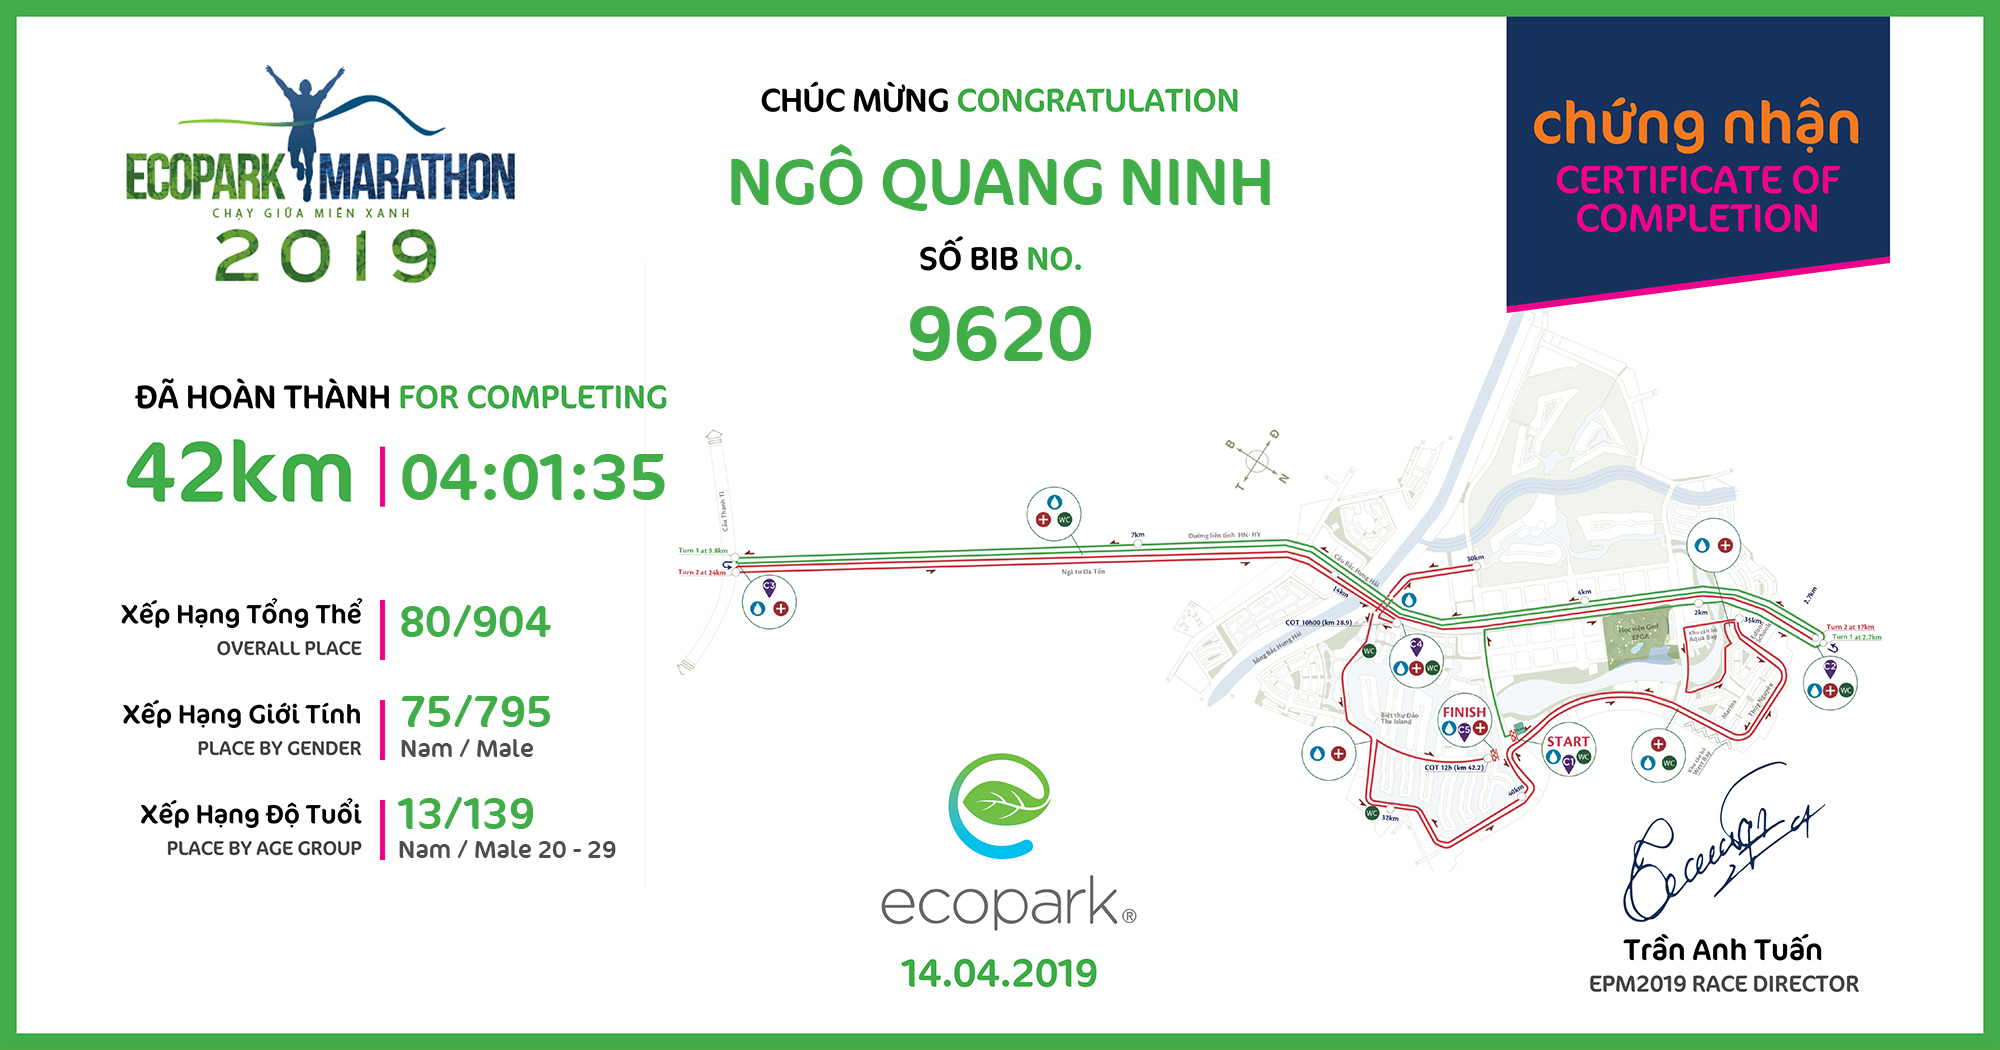 9620 - Ngô Quang Ninh